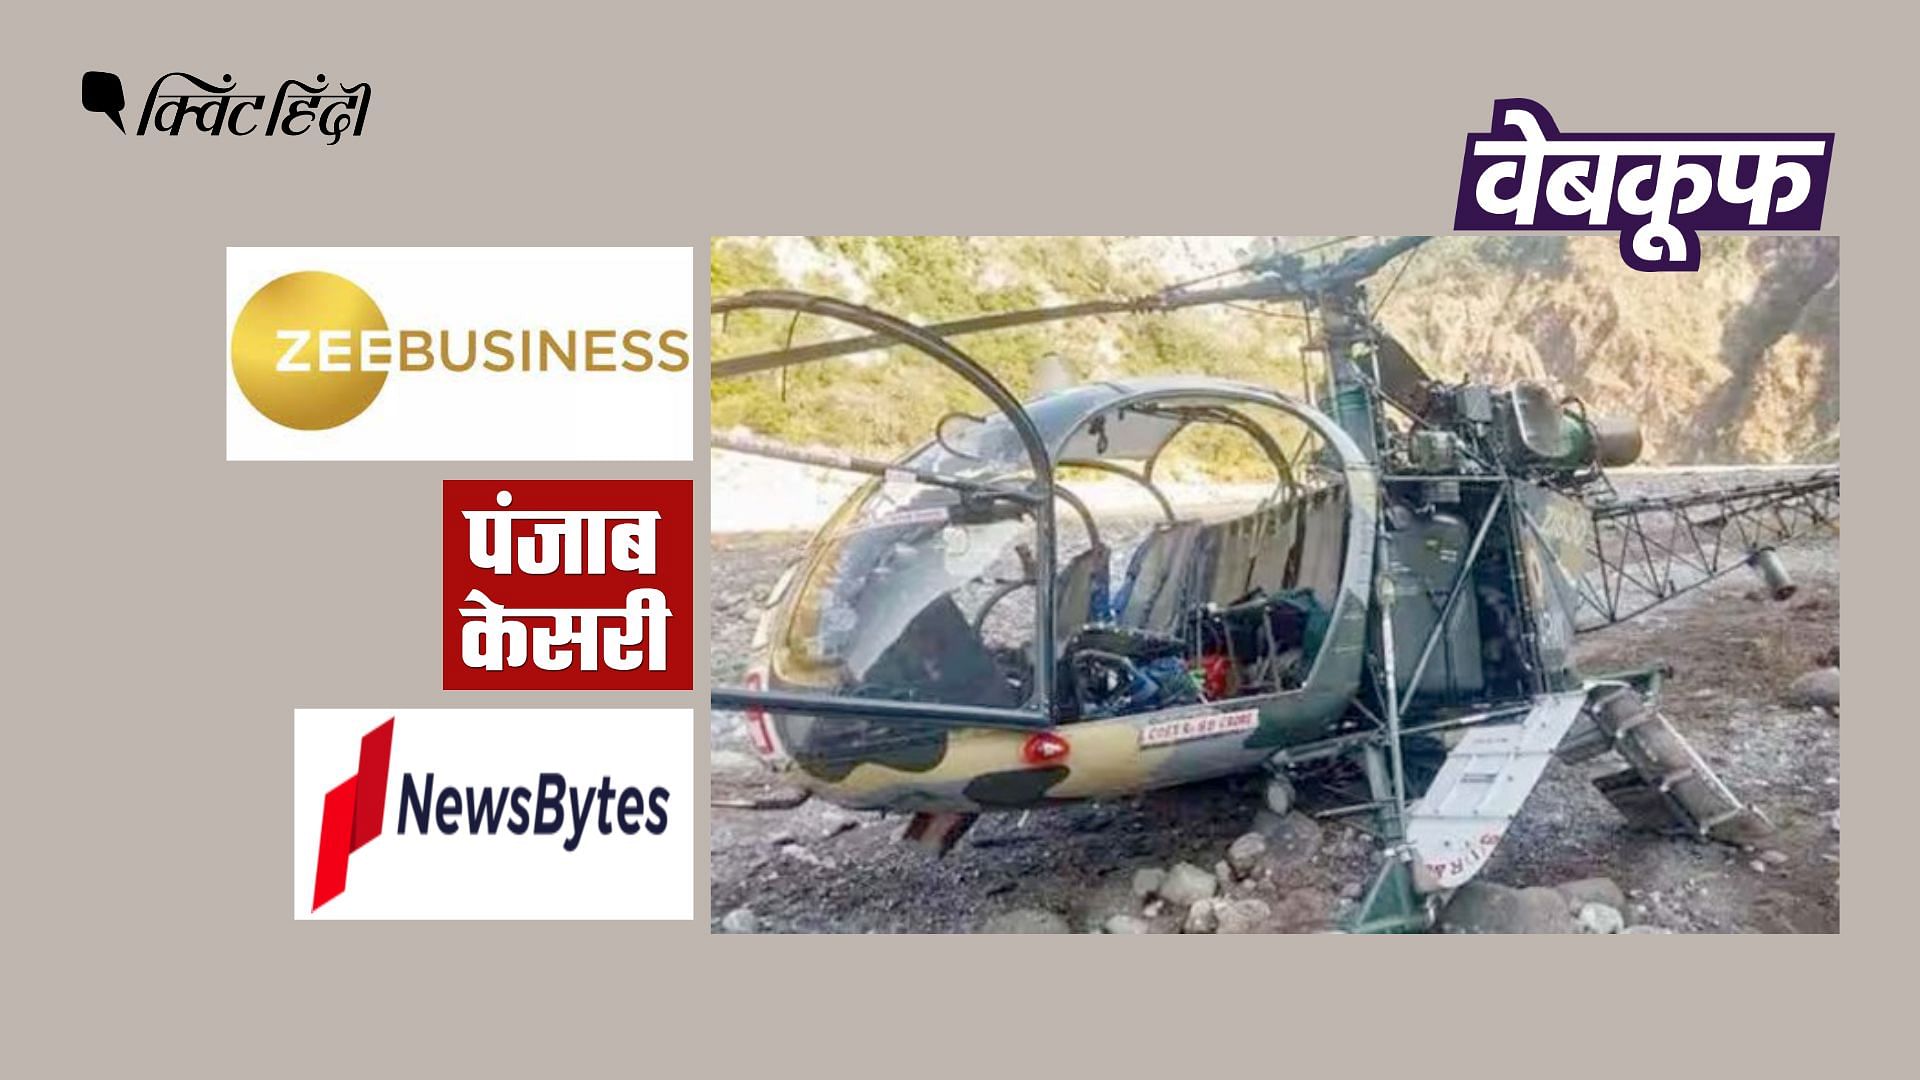 <div class="paragraphs"><p>ये फोटो 3 फरवरी 2020 को जम्मू-कश्मीर में क्रैश हुए एक हेलीकॉप्टर की है.</p></div>